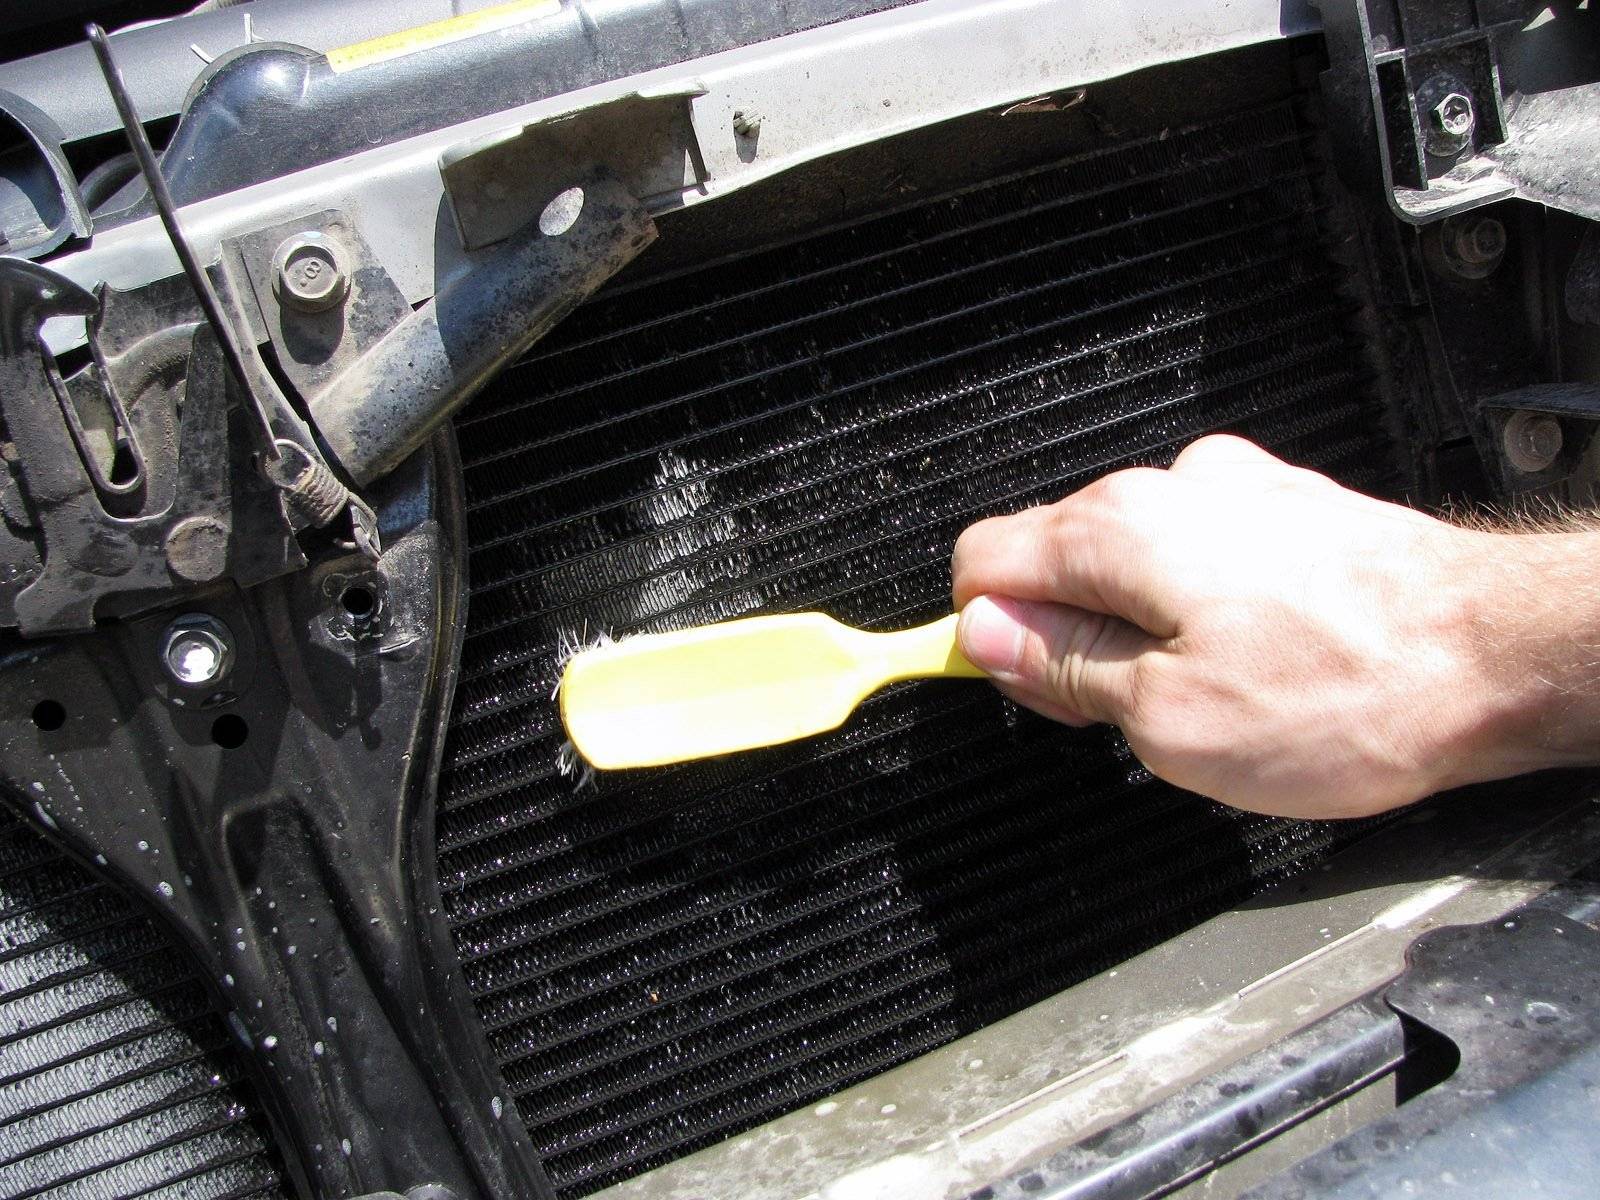 Как почистить радиатор автомобиля снаружи не снимая: средства для чистки, инструкция, советы, видео